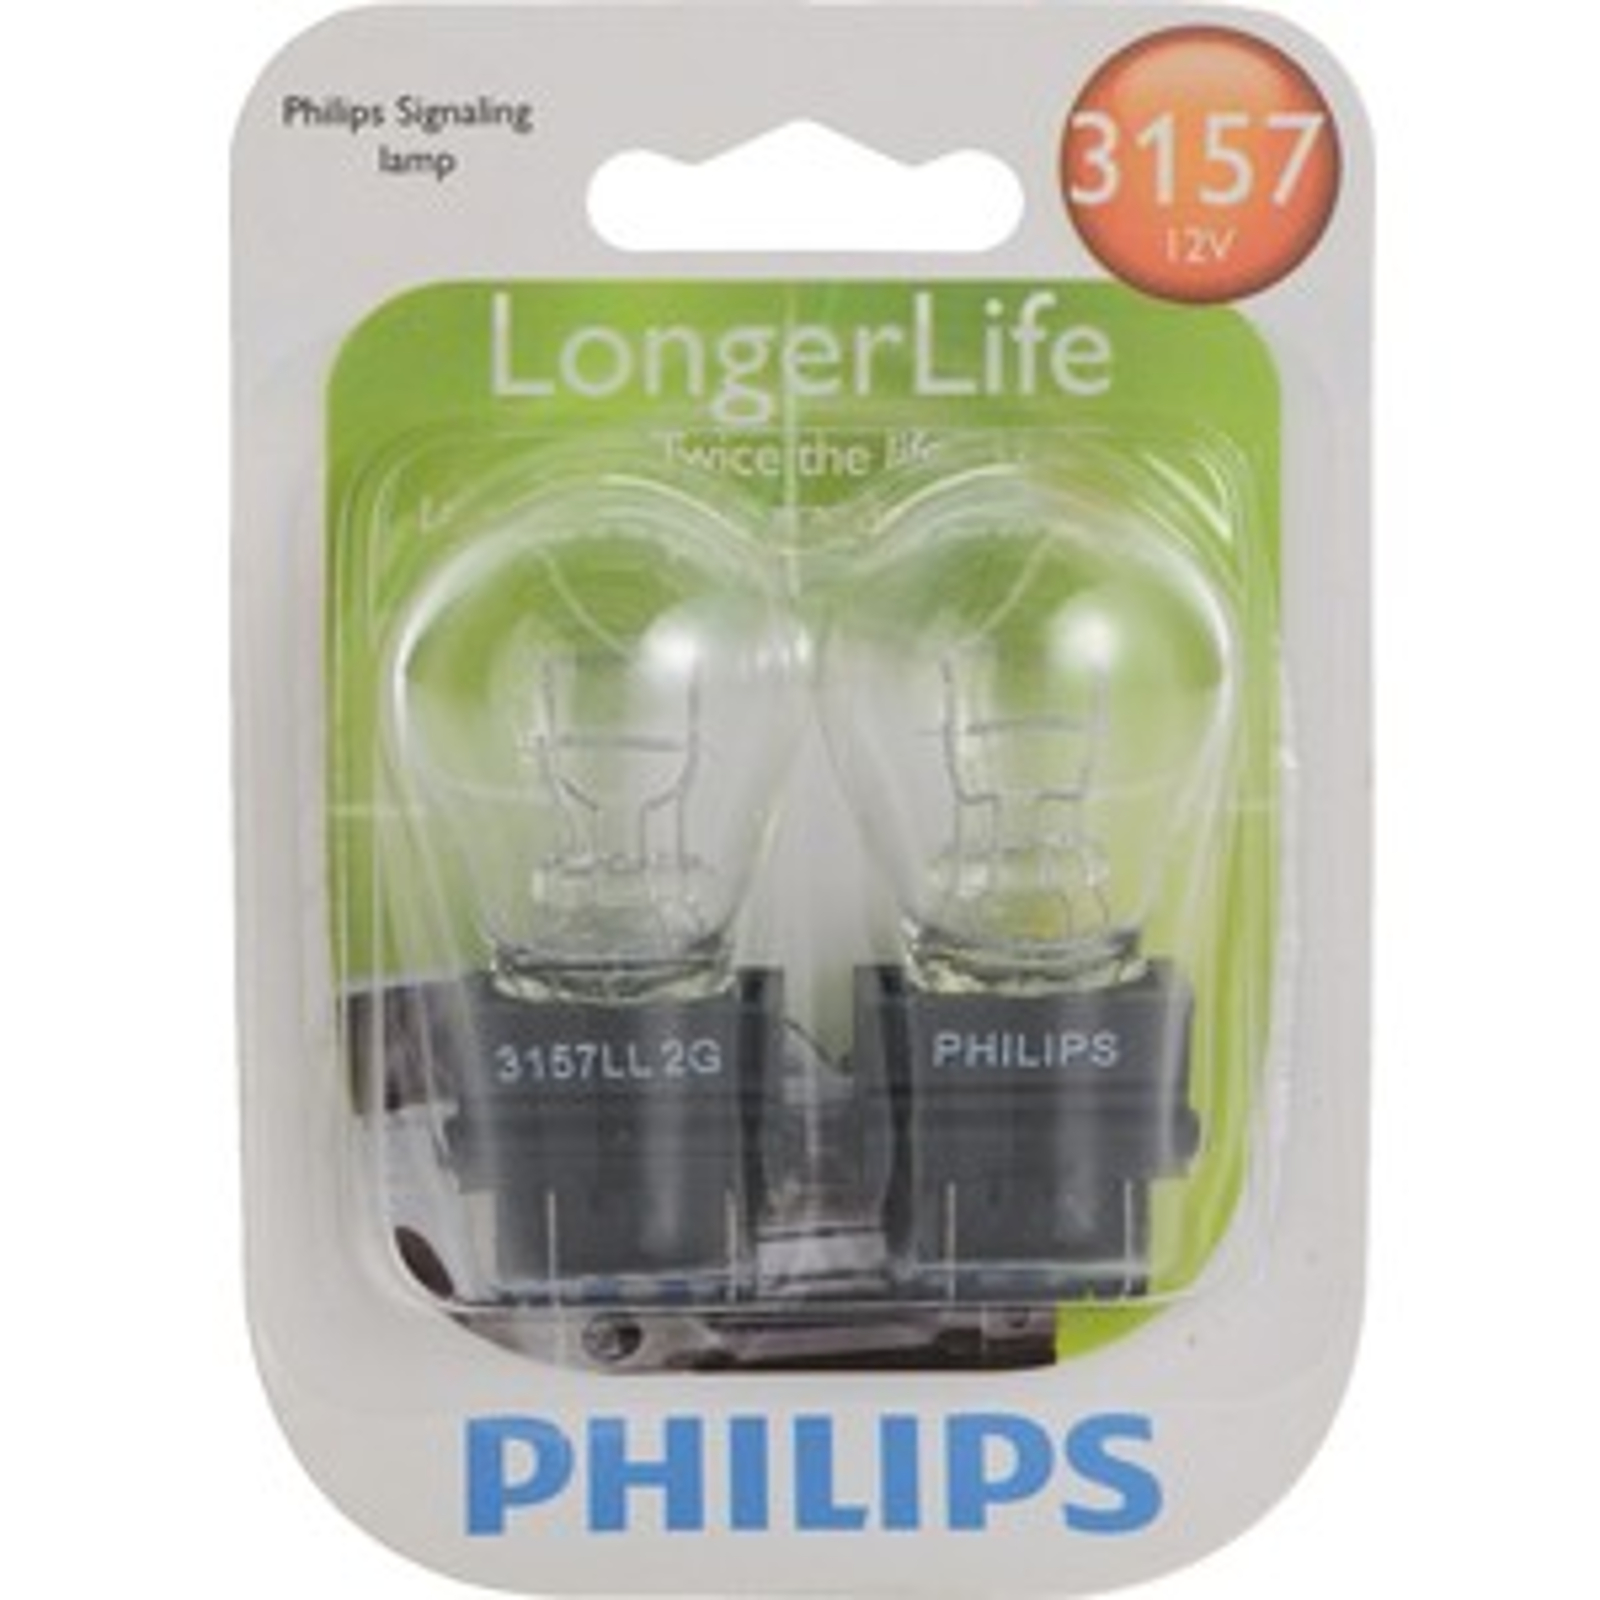 2 pk 3157 12V long life mini bulb